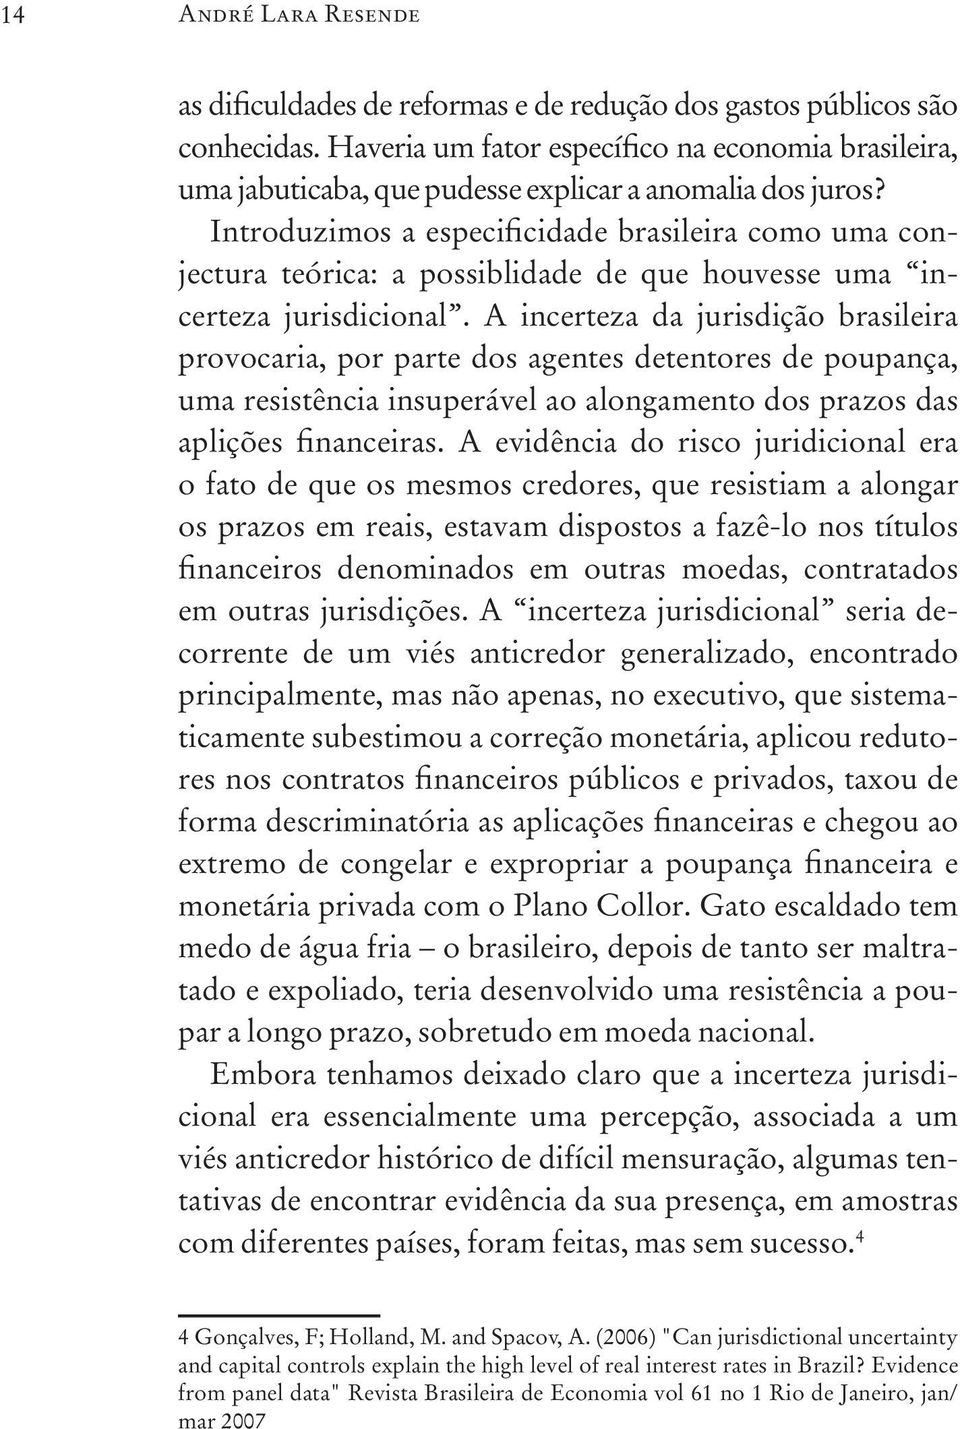 Introduzimos a especificidade brasileira como uma conjectura teórica: a possiblidade de que houvesse uma incerteza jurisdicional.